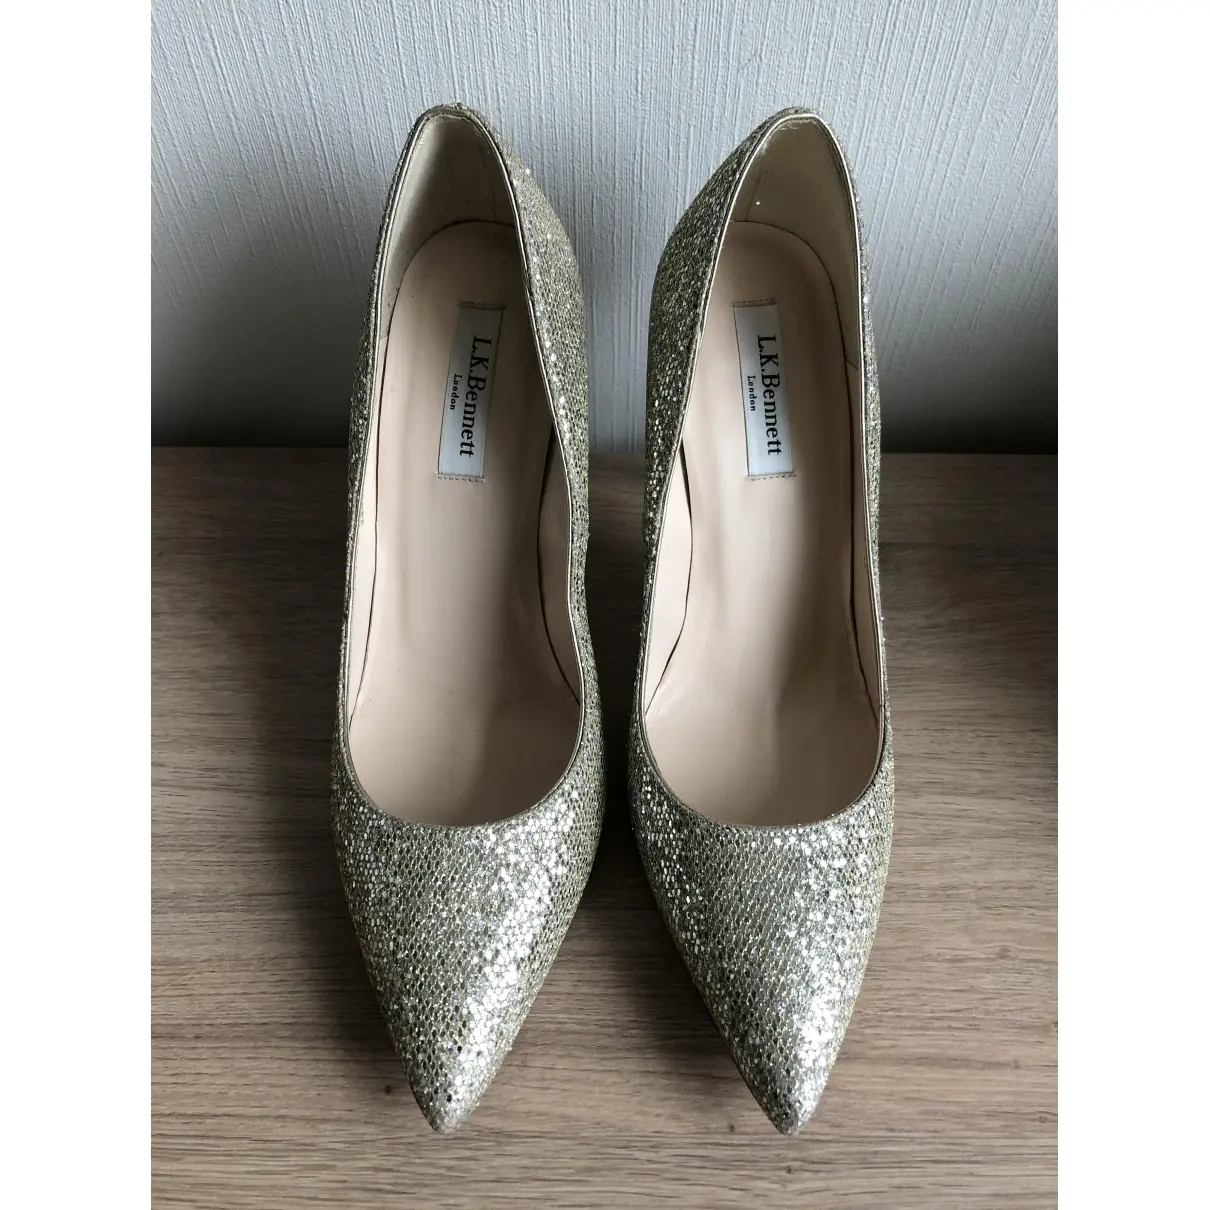 Lk Bennett Glitter heels for sale